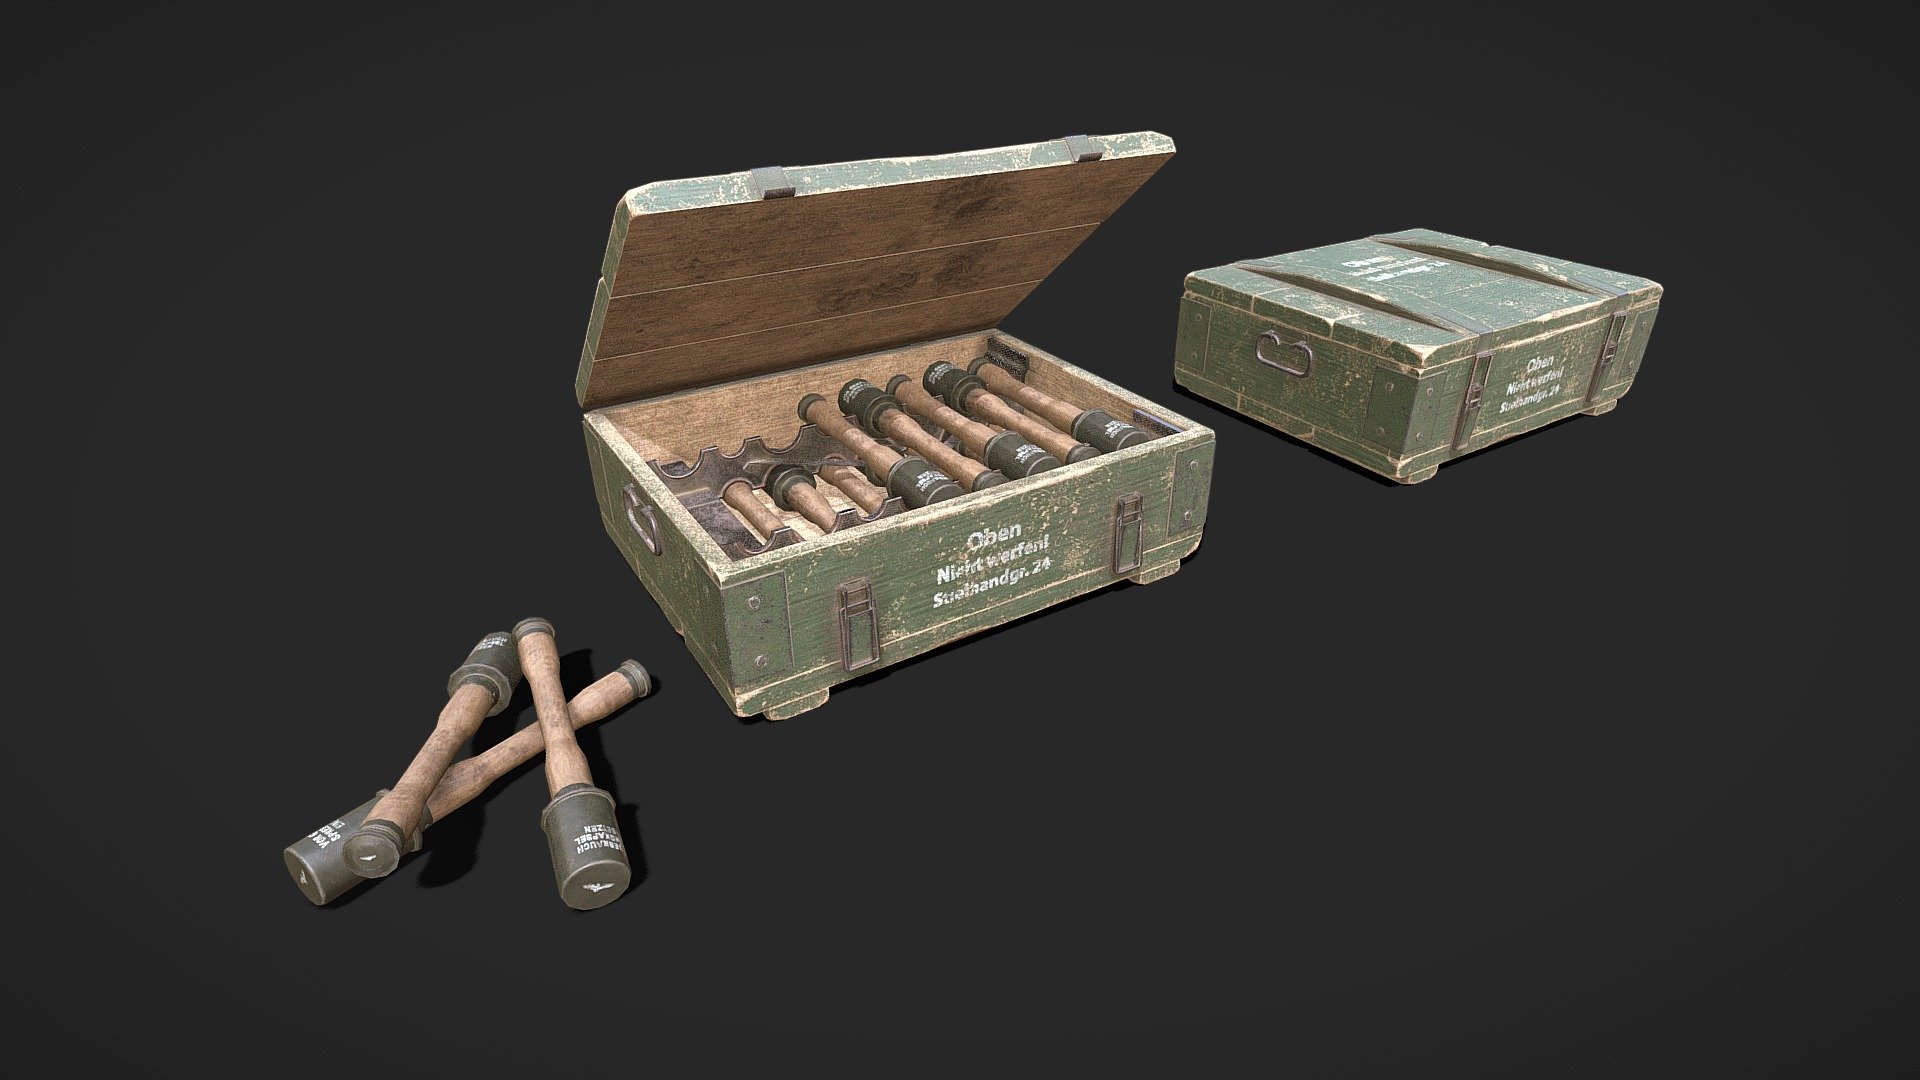 Grenade in box